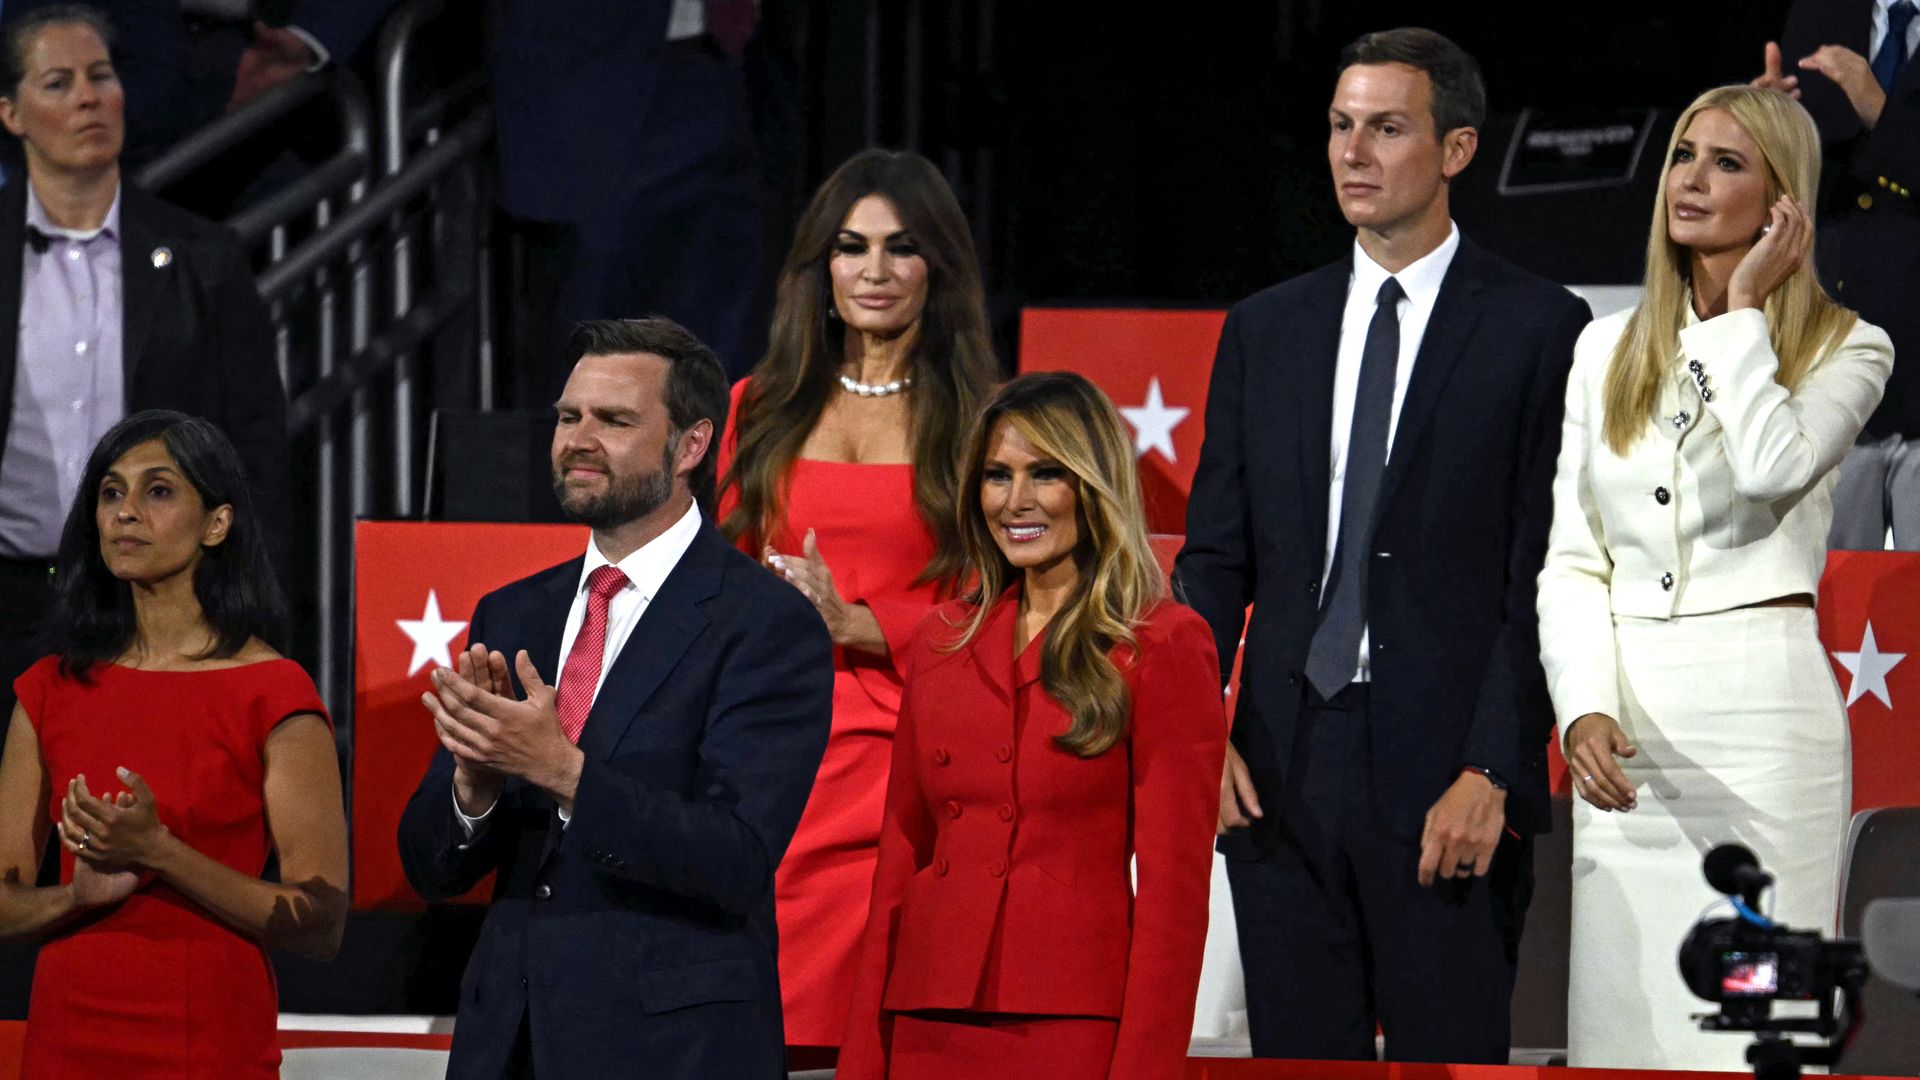 Ivanka Trump con su esposo Jared Kushner, además de Melania Trump, J.D. Vance y su esposa, Usha Vance